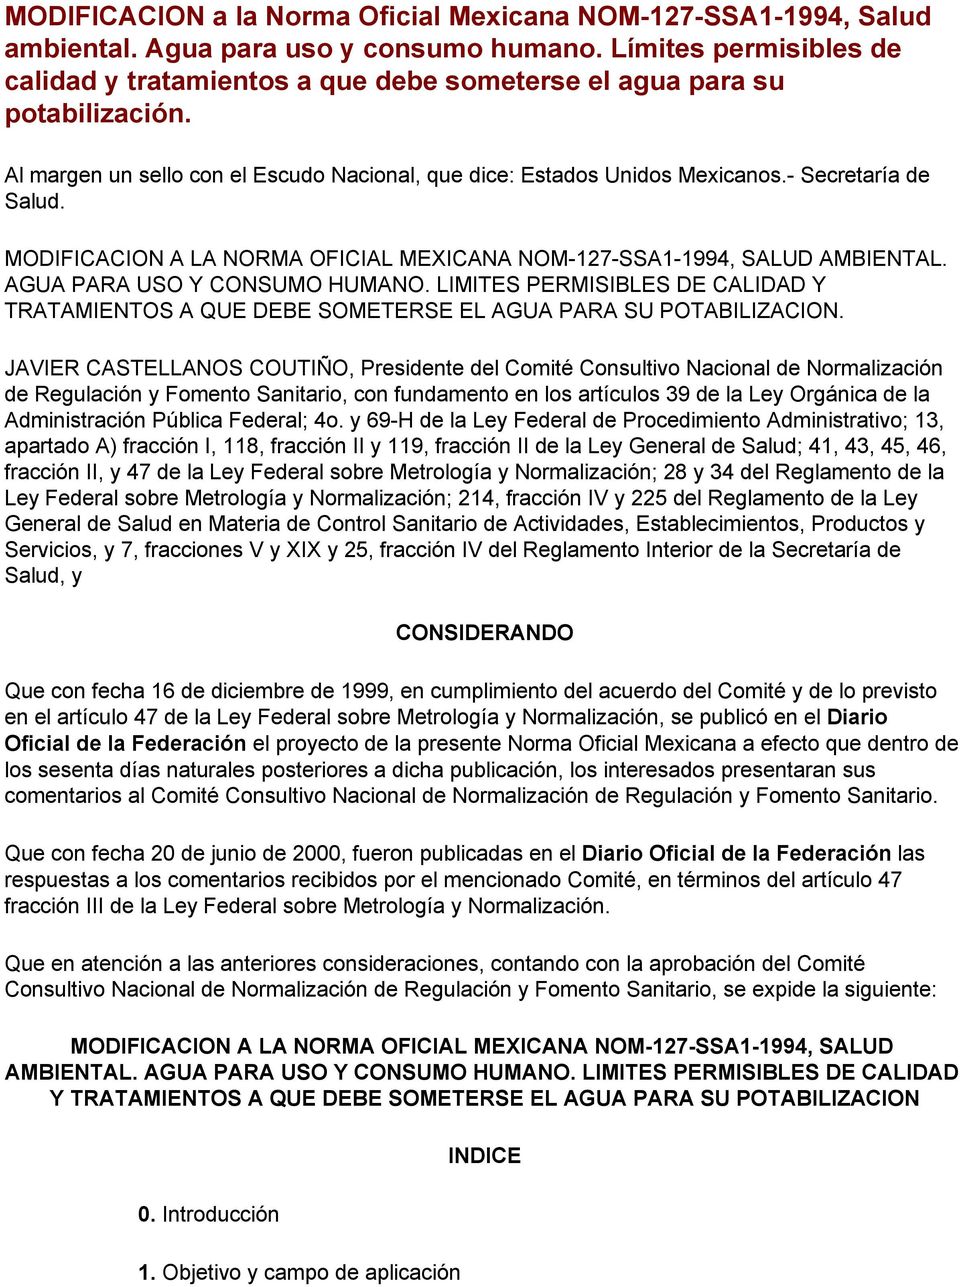 MODIFICACION A LA NORMA OFICIAL MEXICANA NOM-127-SSA1-1994, SALUD AMBIENTAL. AGUA PARA USO Y CONSUMO HUMANO.